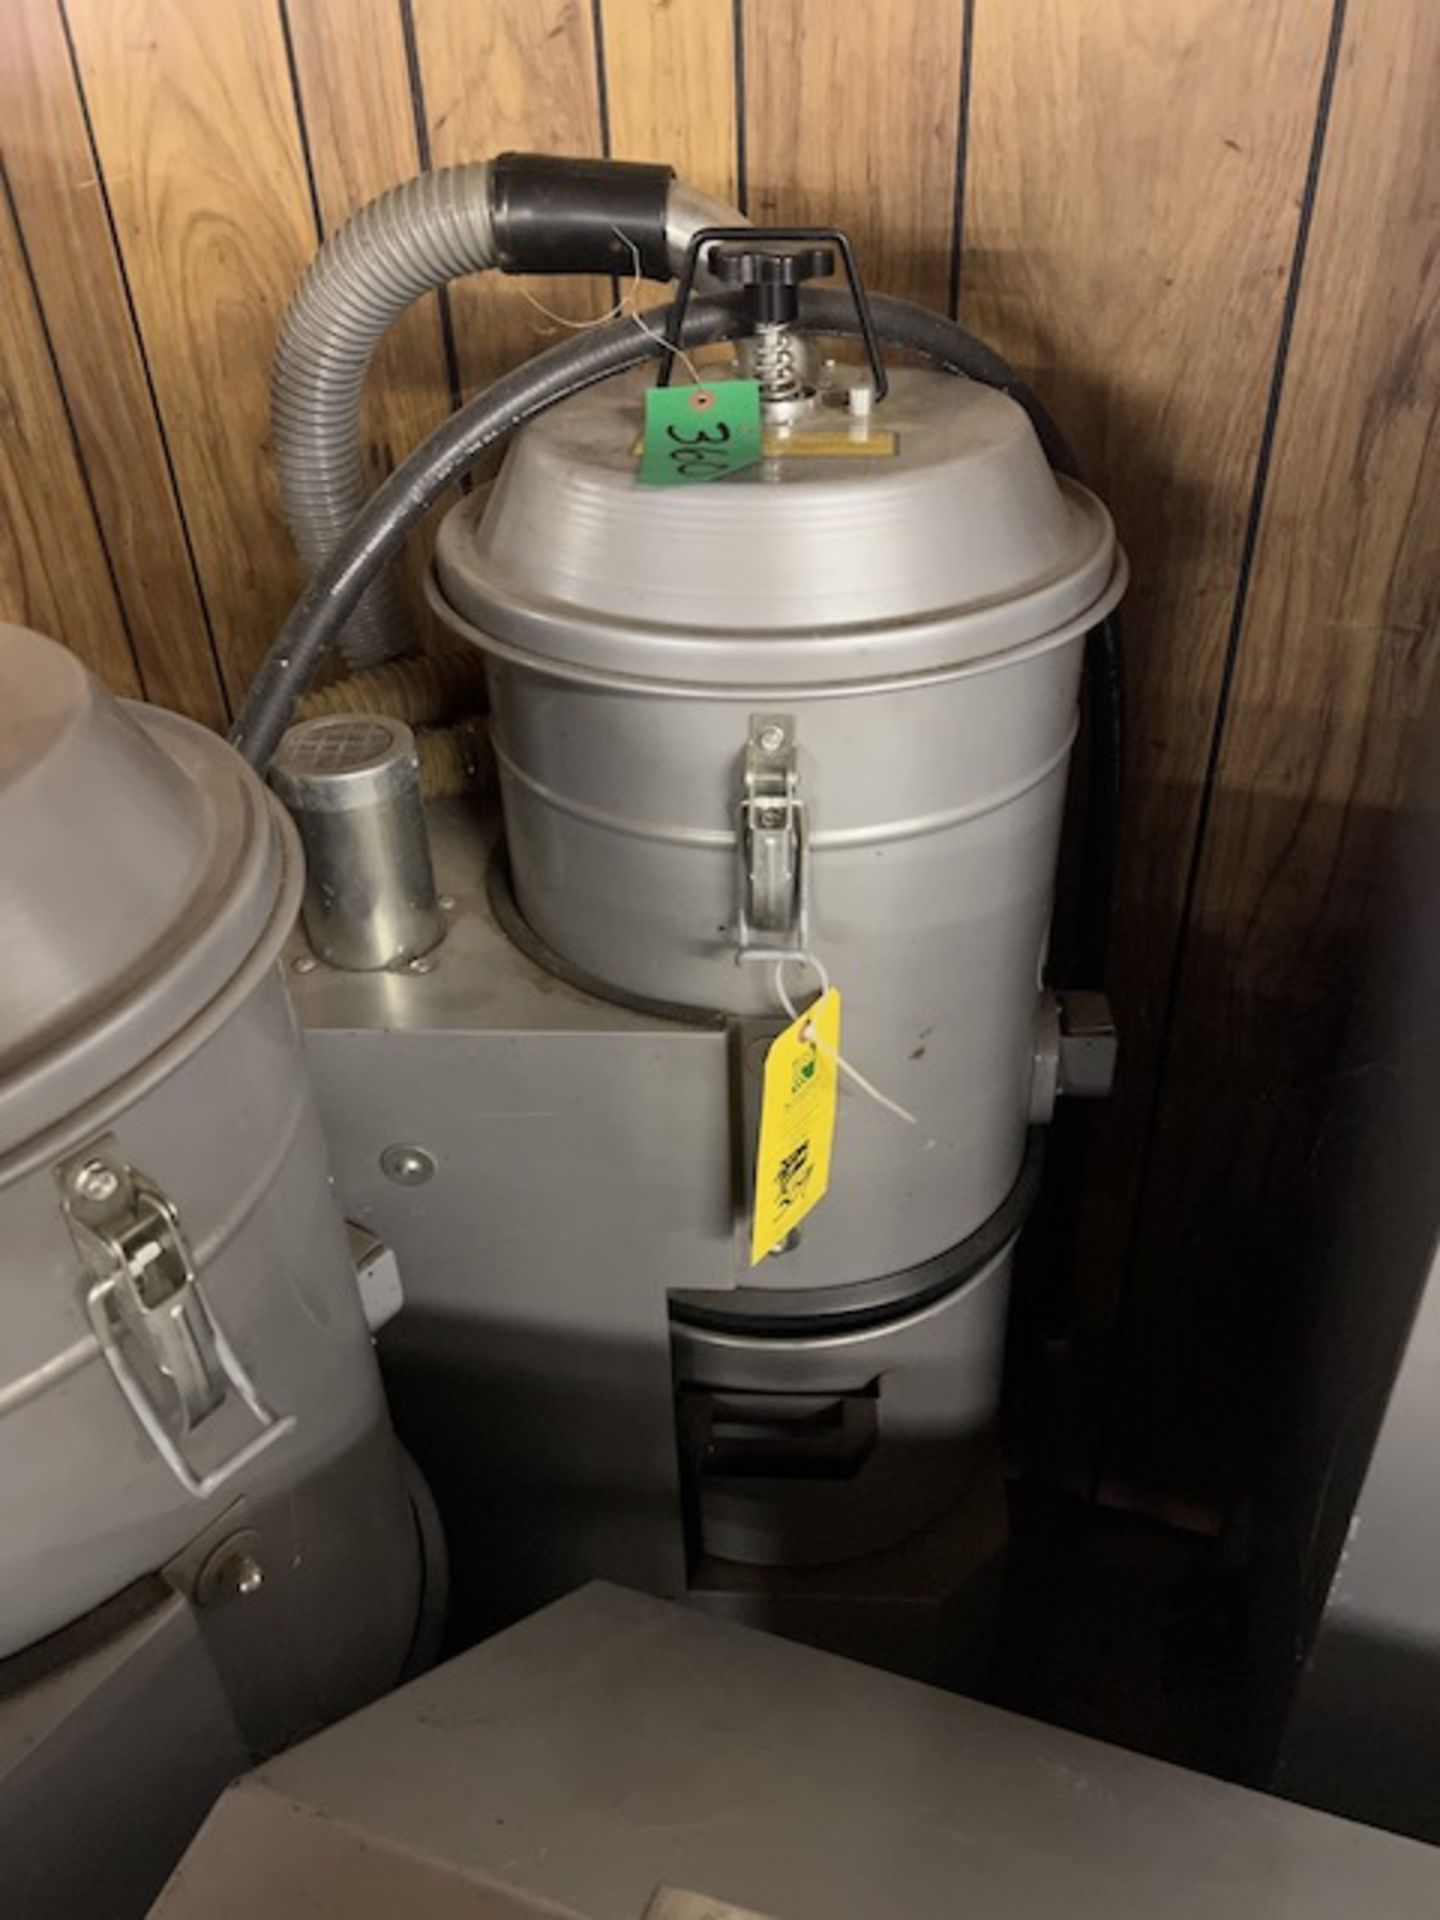 CFM Aspirator Industrial Vacuum, Located in Deshler, OH - Image 6 of 6